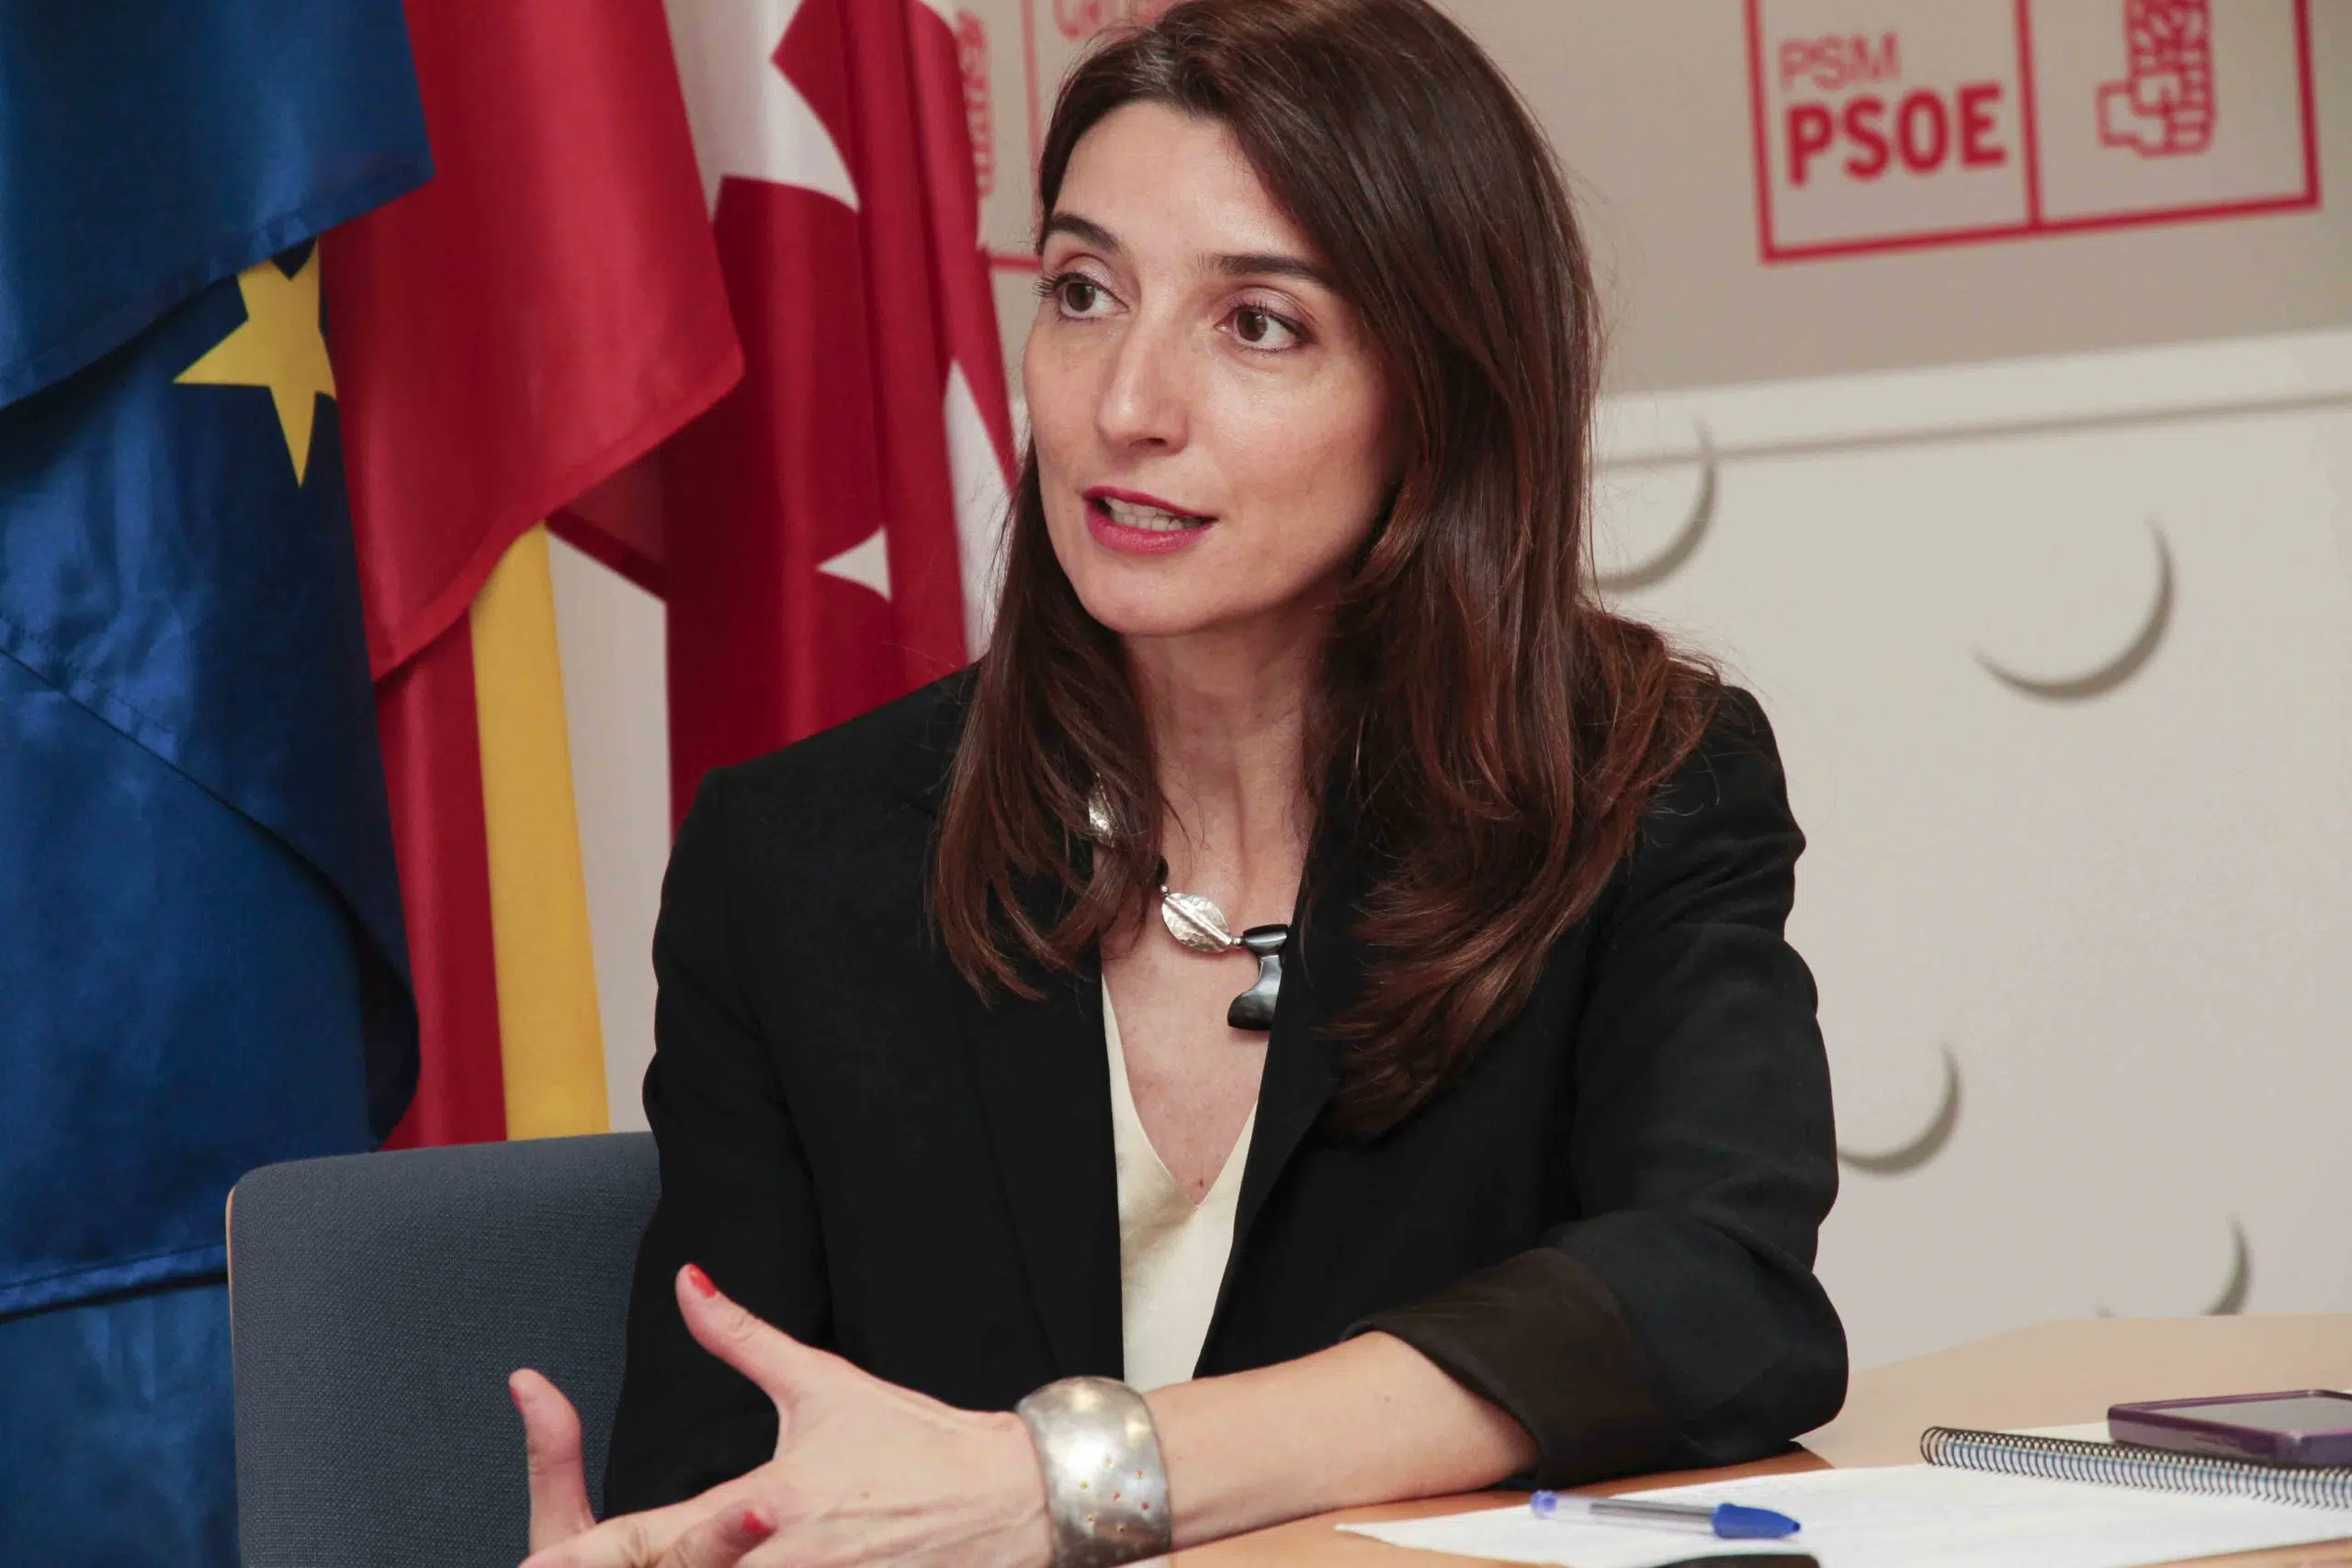 La senadora (y magistrada) Pilar Llop será la nueva presidenta de la Cámara Alta